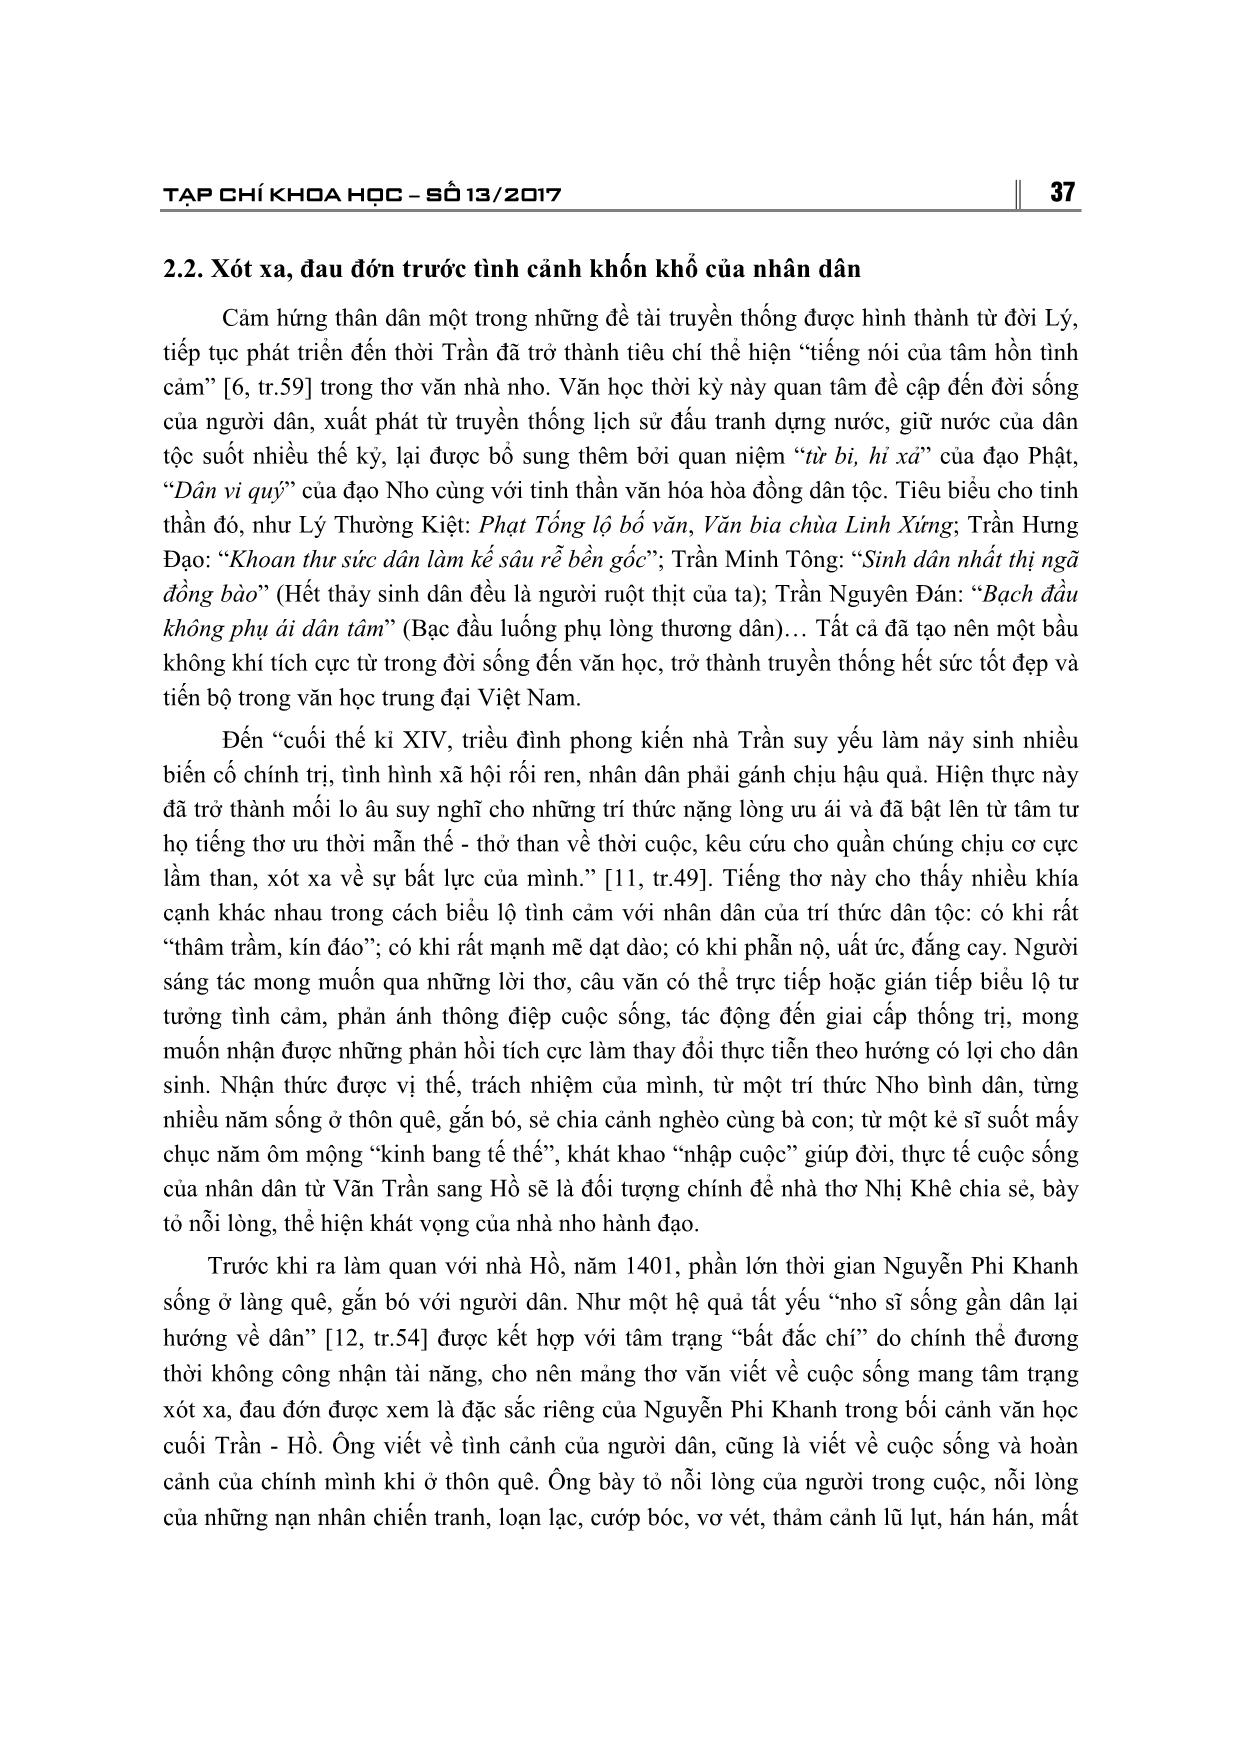 Thơ văn Nguyễn Phi Khanh - Nỗi niềm trăn trở về bản thân, thời đại và cuộc sống của nhân dân trang 6